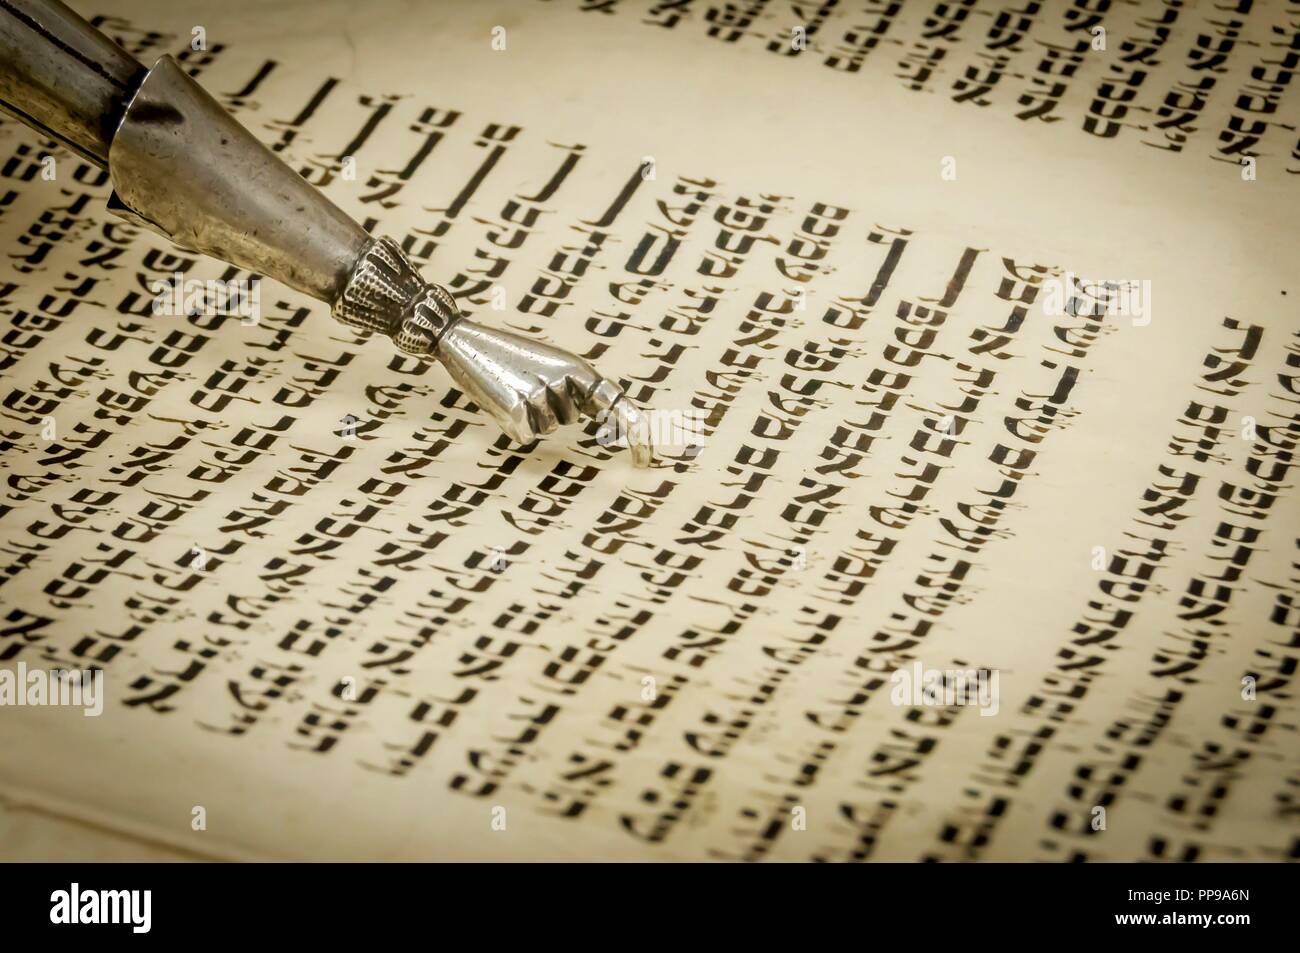 Pointeur de la Torah avec une main à la fin d'un doigt prolongé pour aider à lire le texte de l'Ecriture sainte de la Torah écrite en hébreu ancien. Méguila Banque D'Images